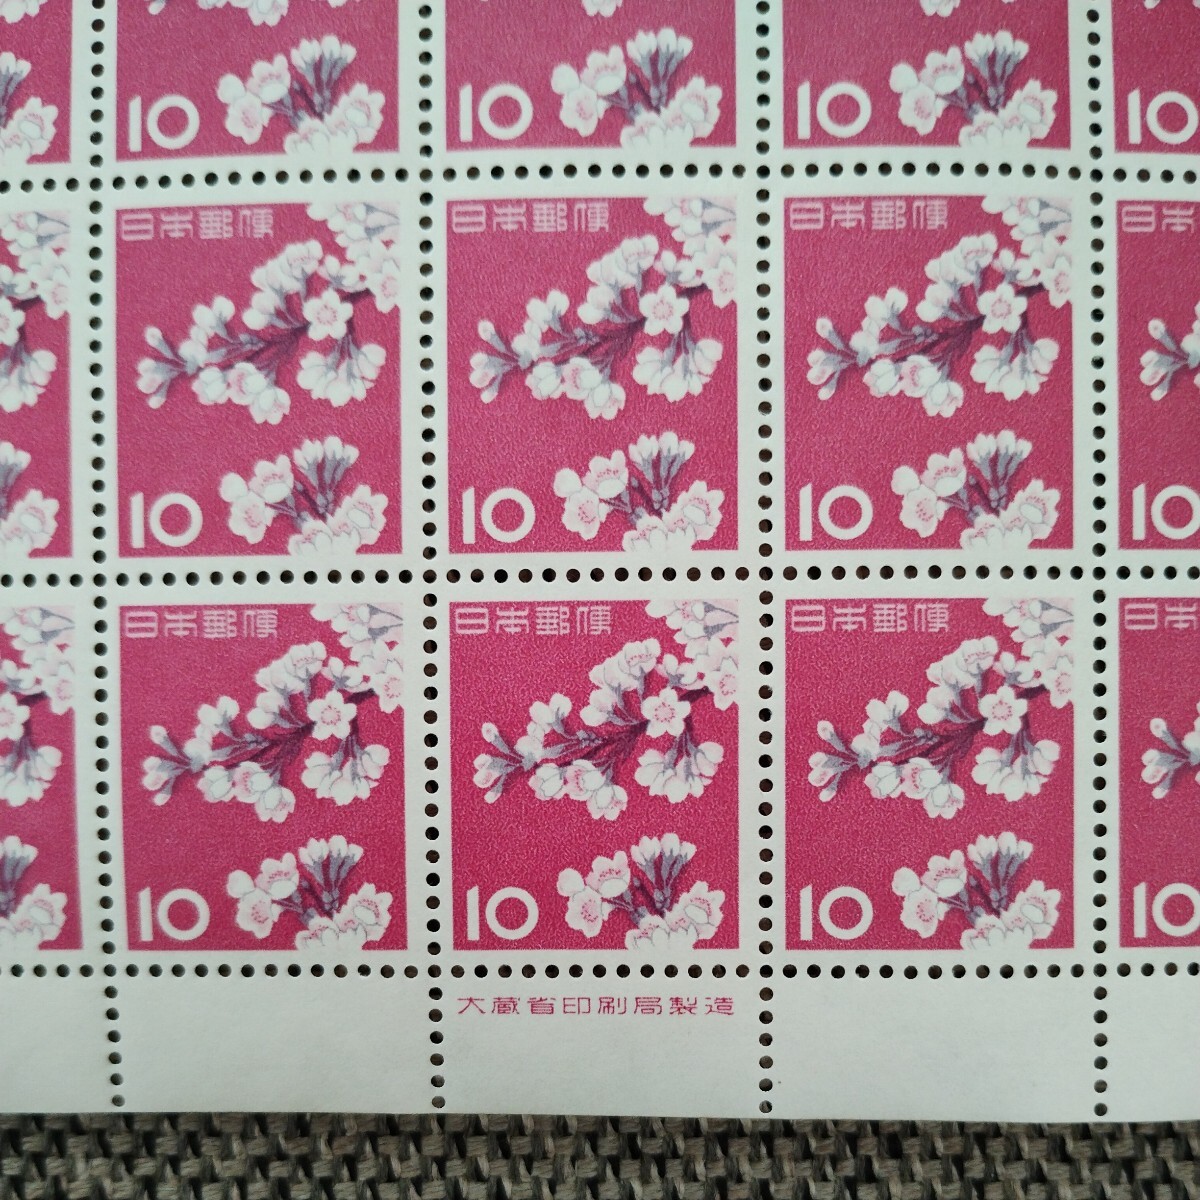 【送料無料】目打ちエラー 記念切手 ソメイヨシノ 10円切手 1961年4月1日発行 大蔵省印刷局製造 目打ち抜き損ね_画像7